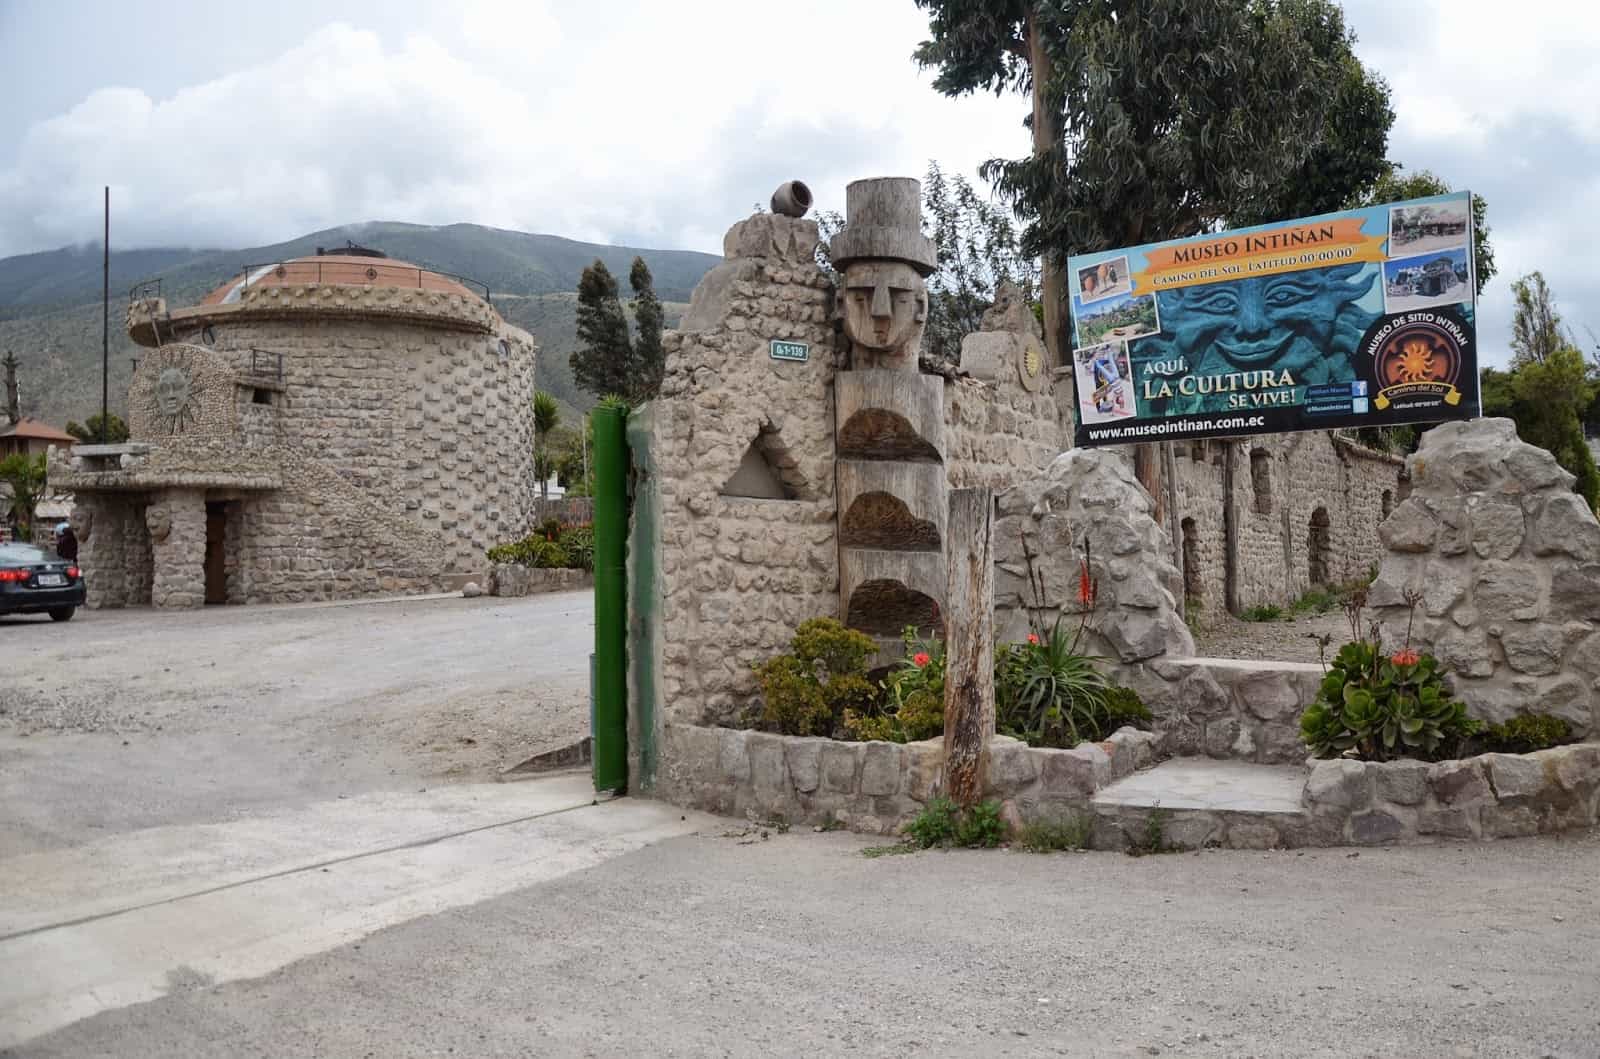 Intiñan Museum at Mitad del Mundo in Ecuador